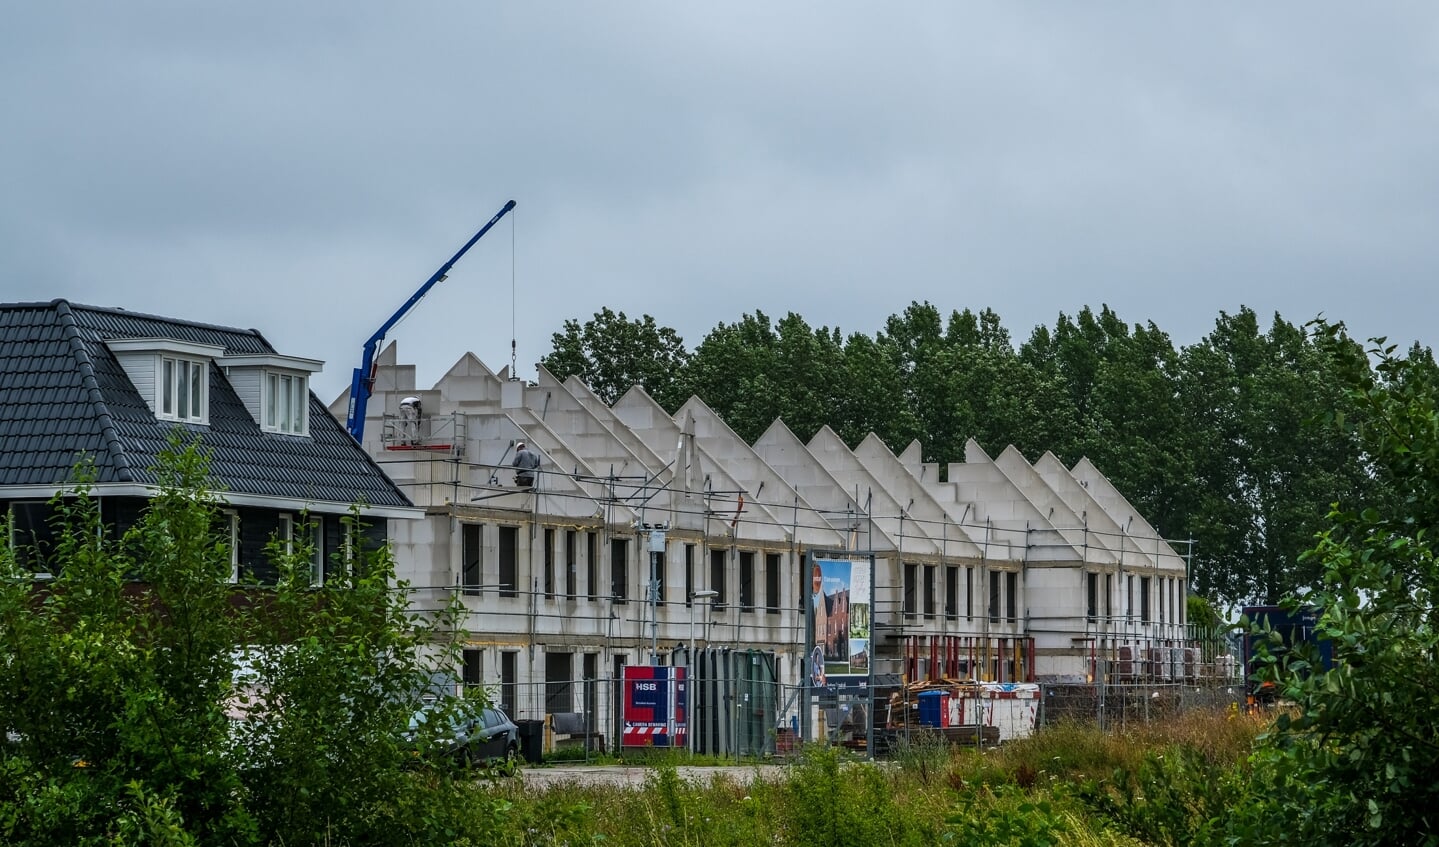 Nieuwbouw in het Nassaupark. De kopers van deze huizen moeten er ook daadwerkelijk gaan wonen vindt Kasper Sulmann van Gezond Haarlemmermeer.  